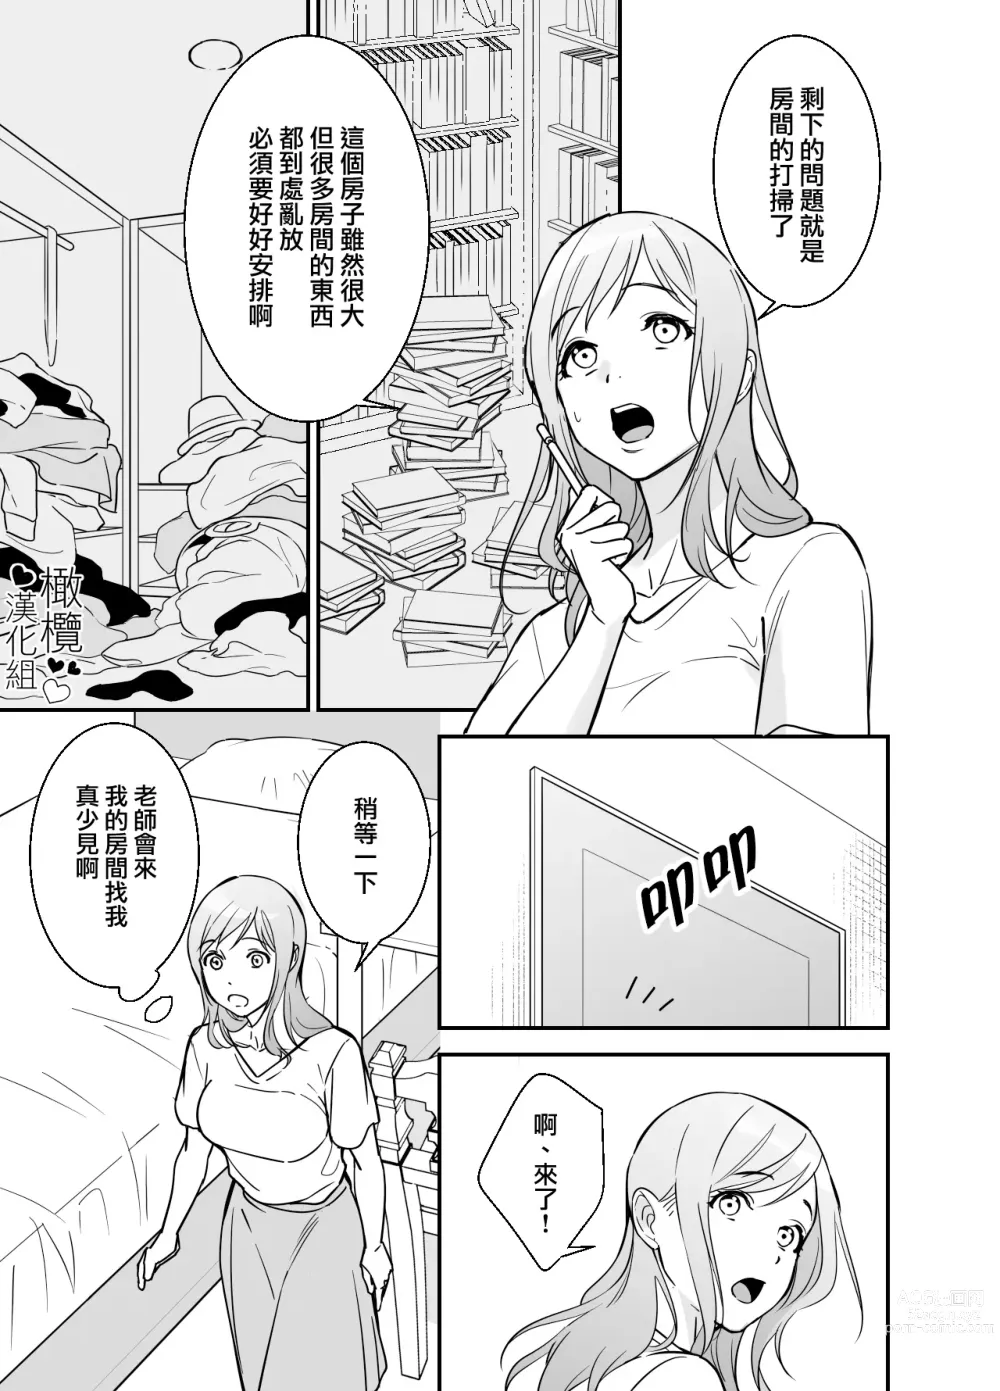 Page 12 of doujinshi 处男小说家和家政妇小姐